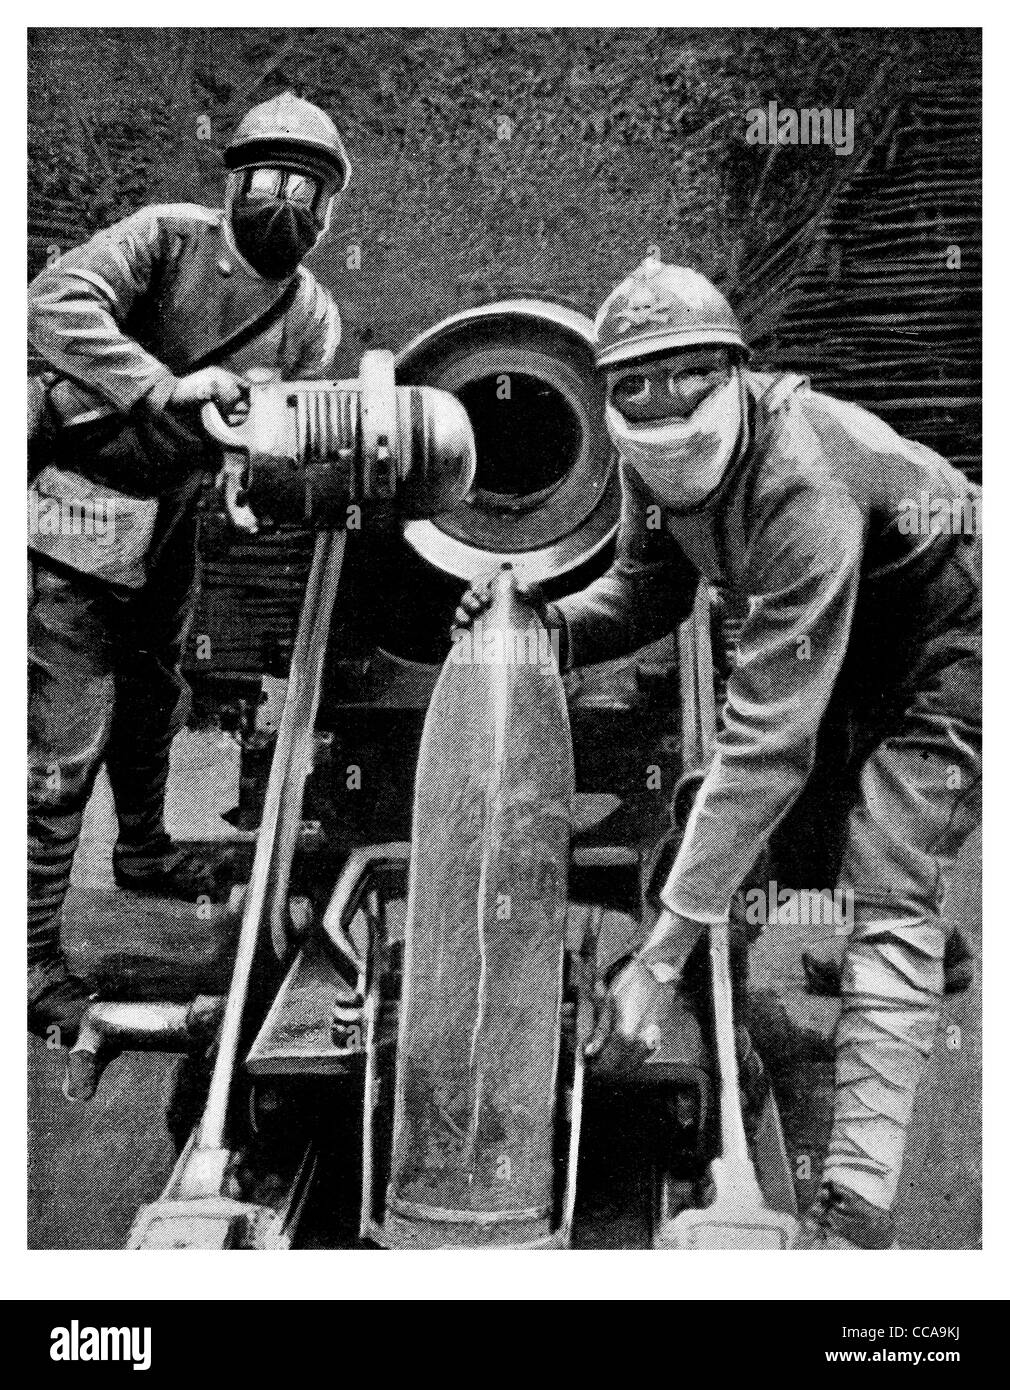 Guscio di caricamento obice colossale attacco Gas artiglieria pesante monster gunner maschere soldati francesi 1916 maschera fumi di veleno Foto Stock